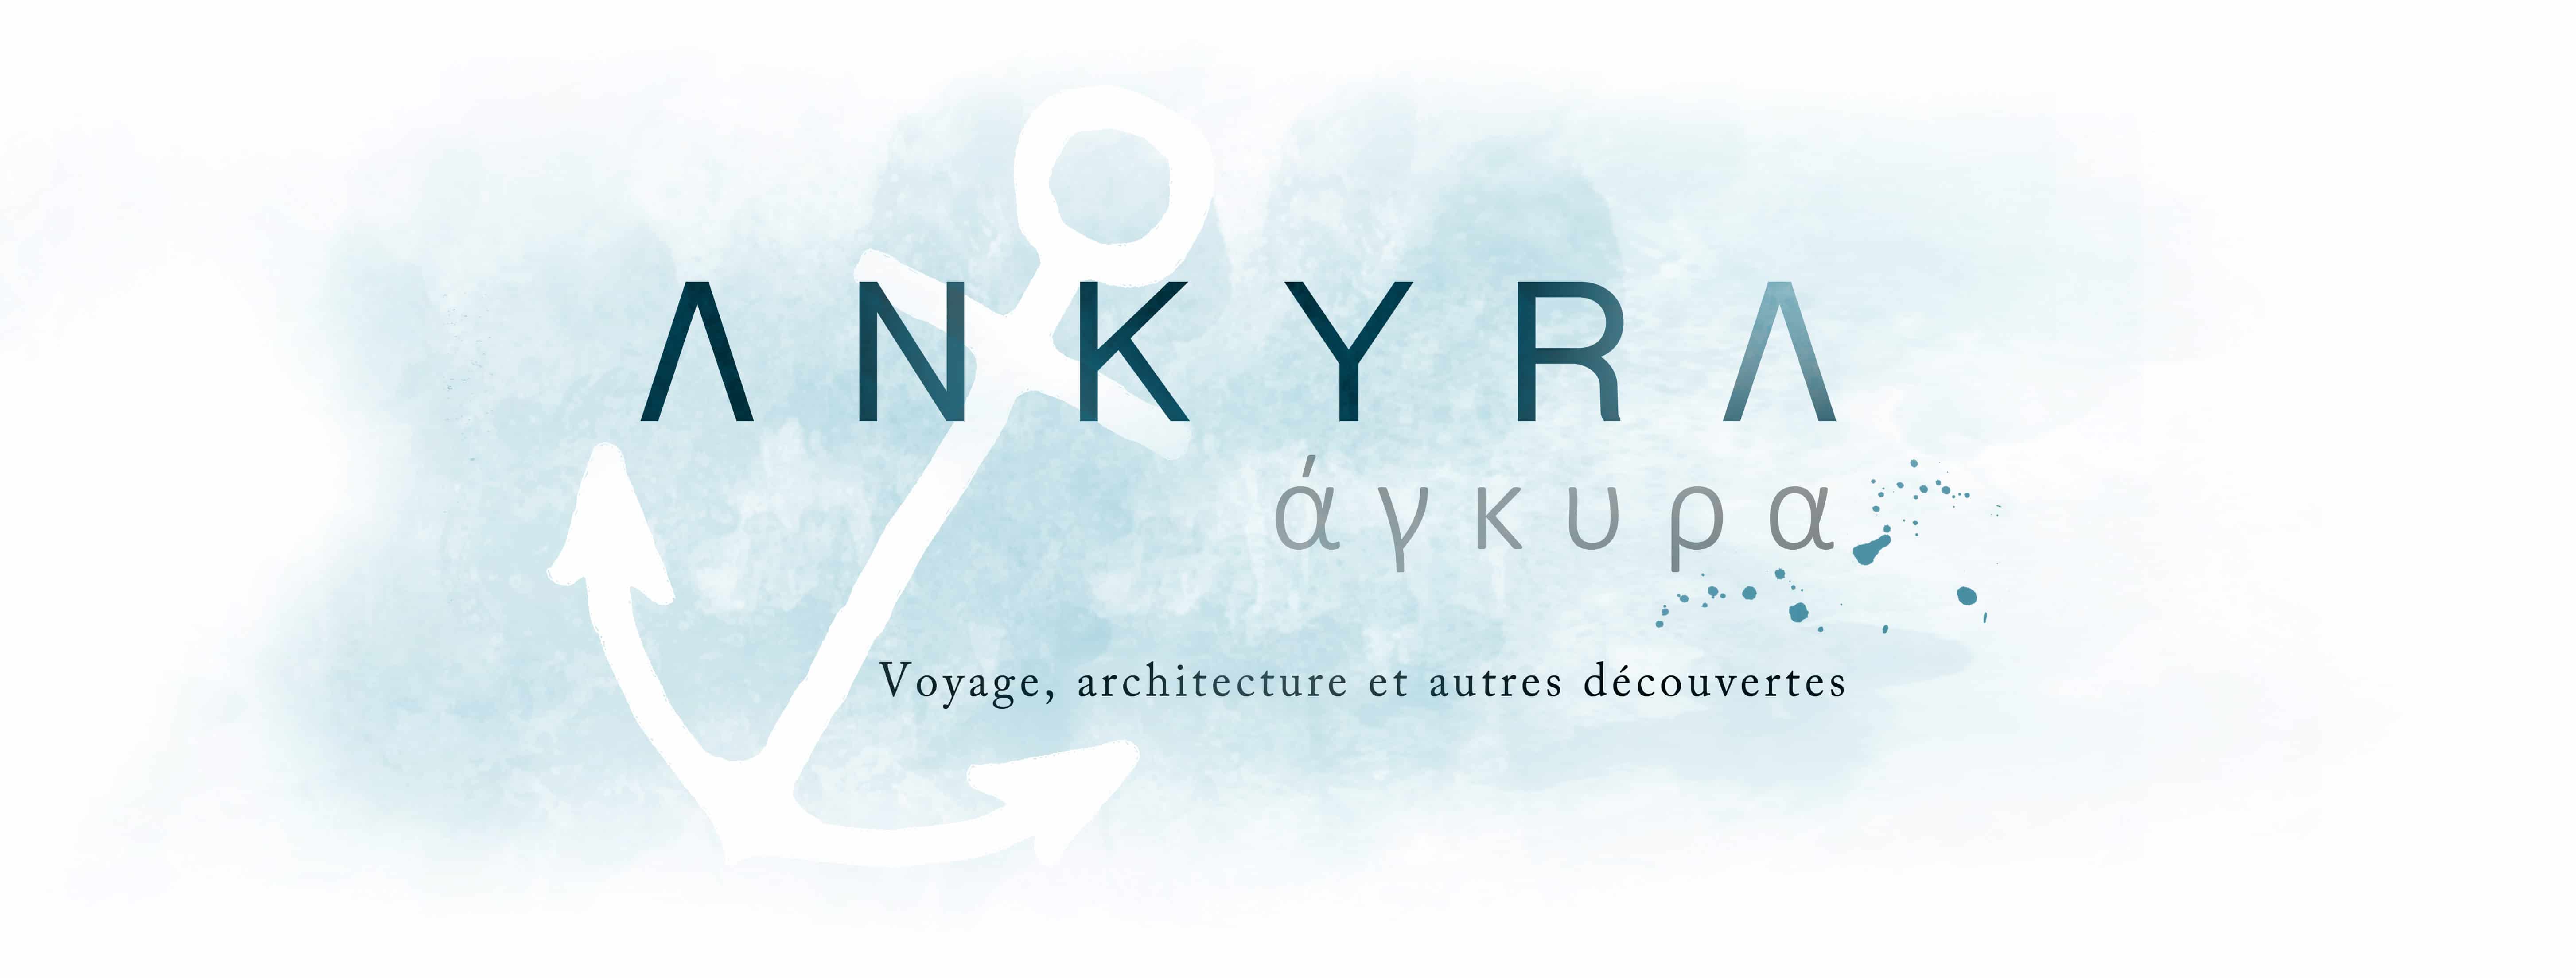 Ankyra - Blog de voyage